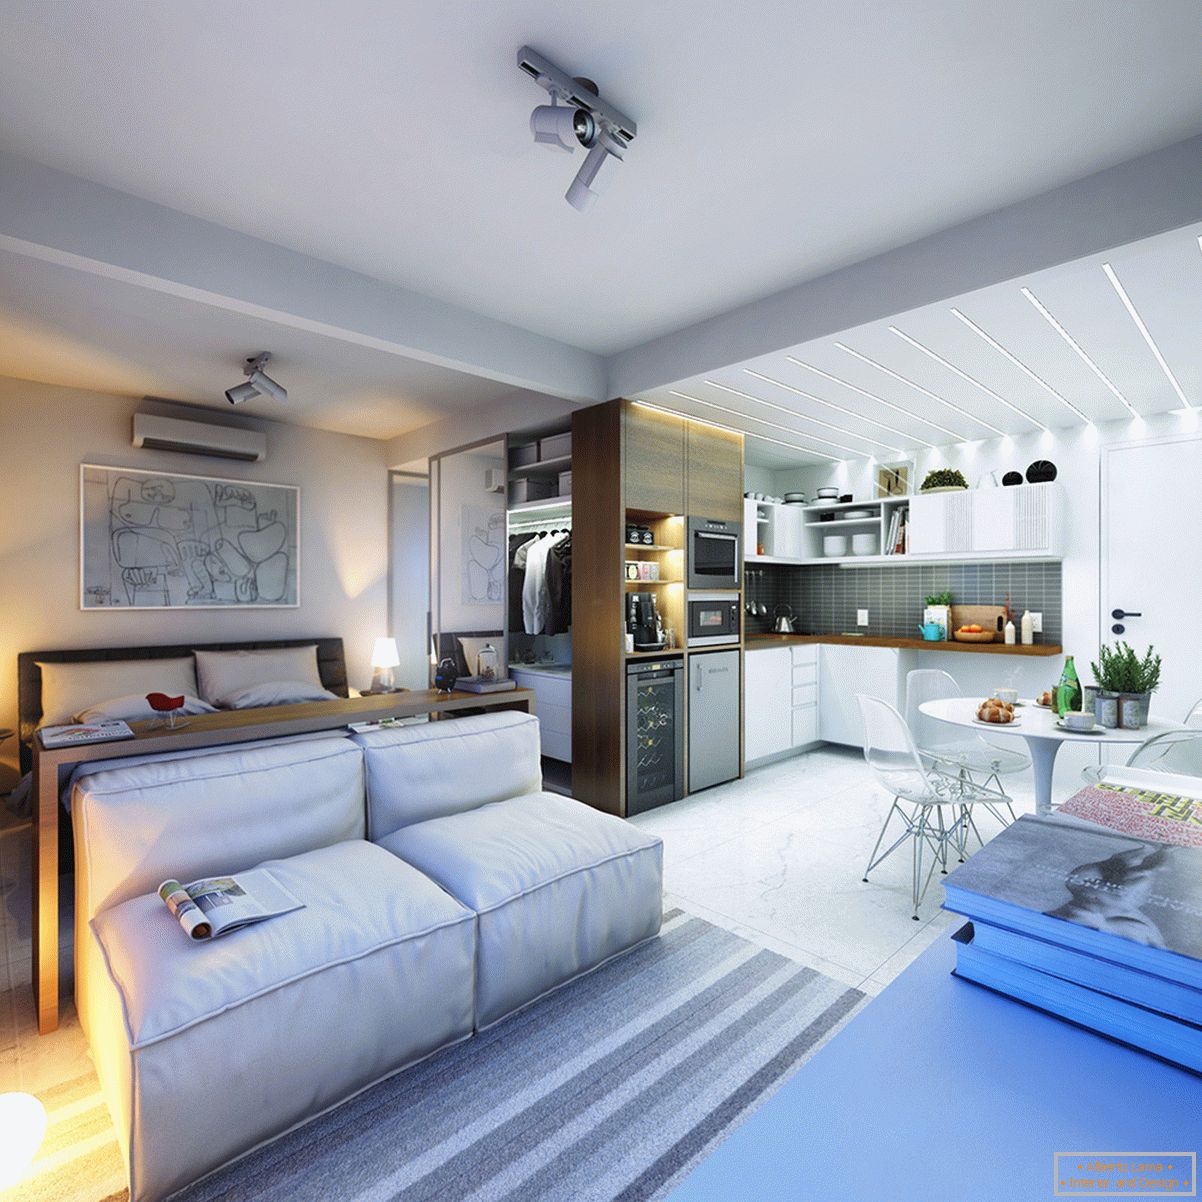 Dizajn malog apartmana u svetlim bojama